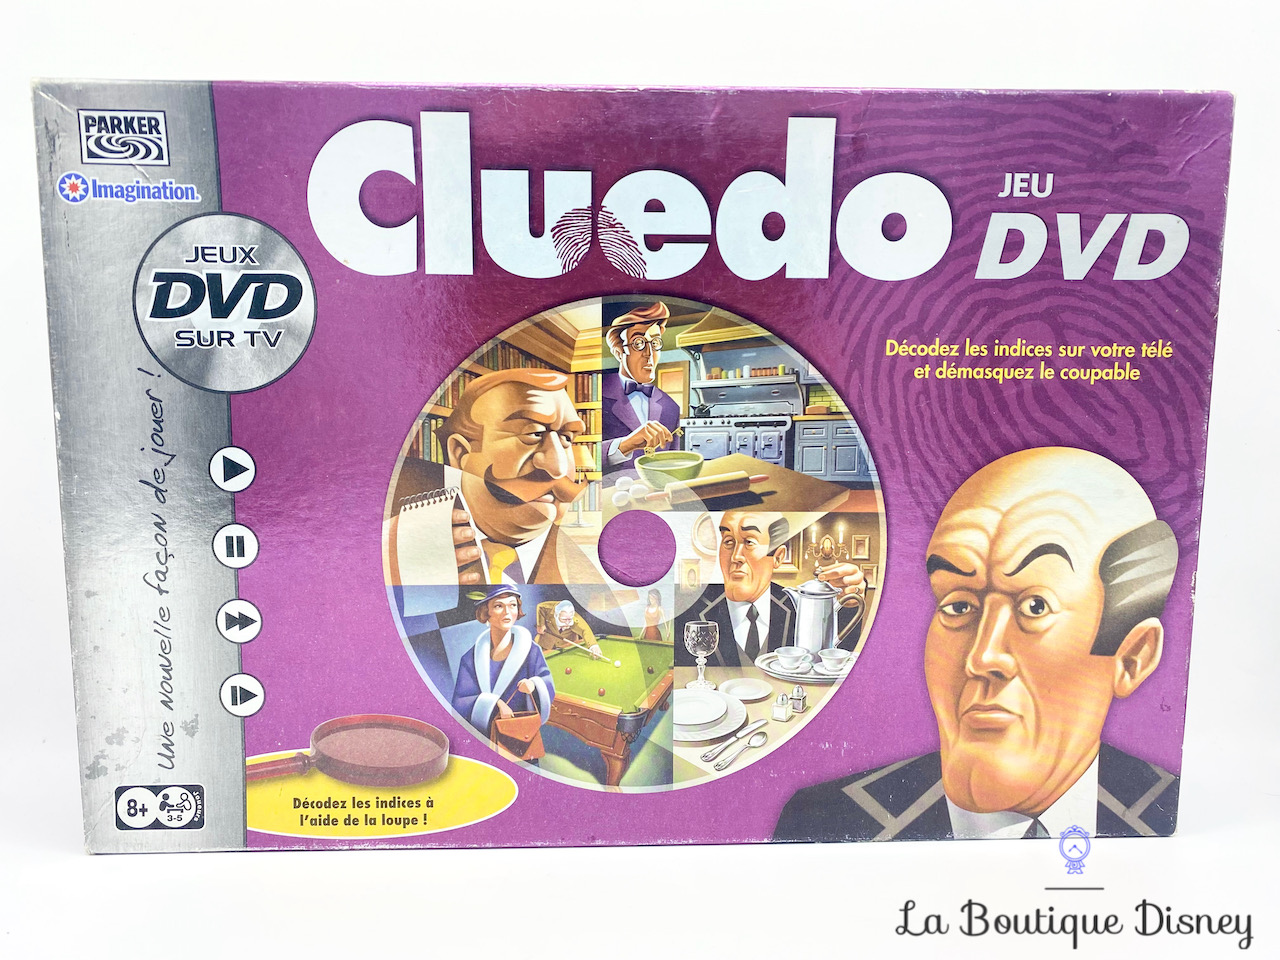 jeu-de-société-cluedo-dvd-interactif-occasion-violet-2